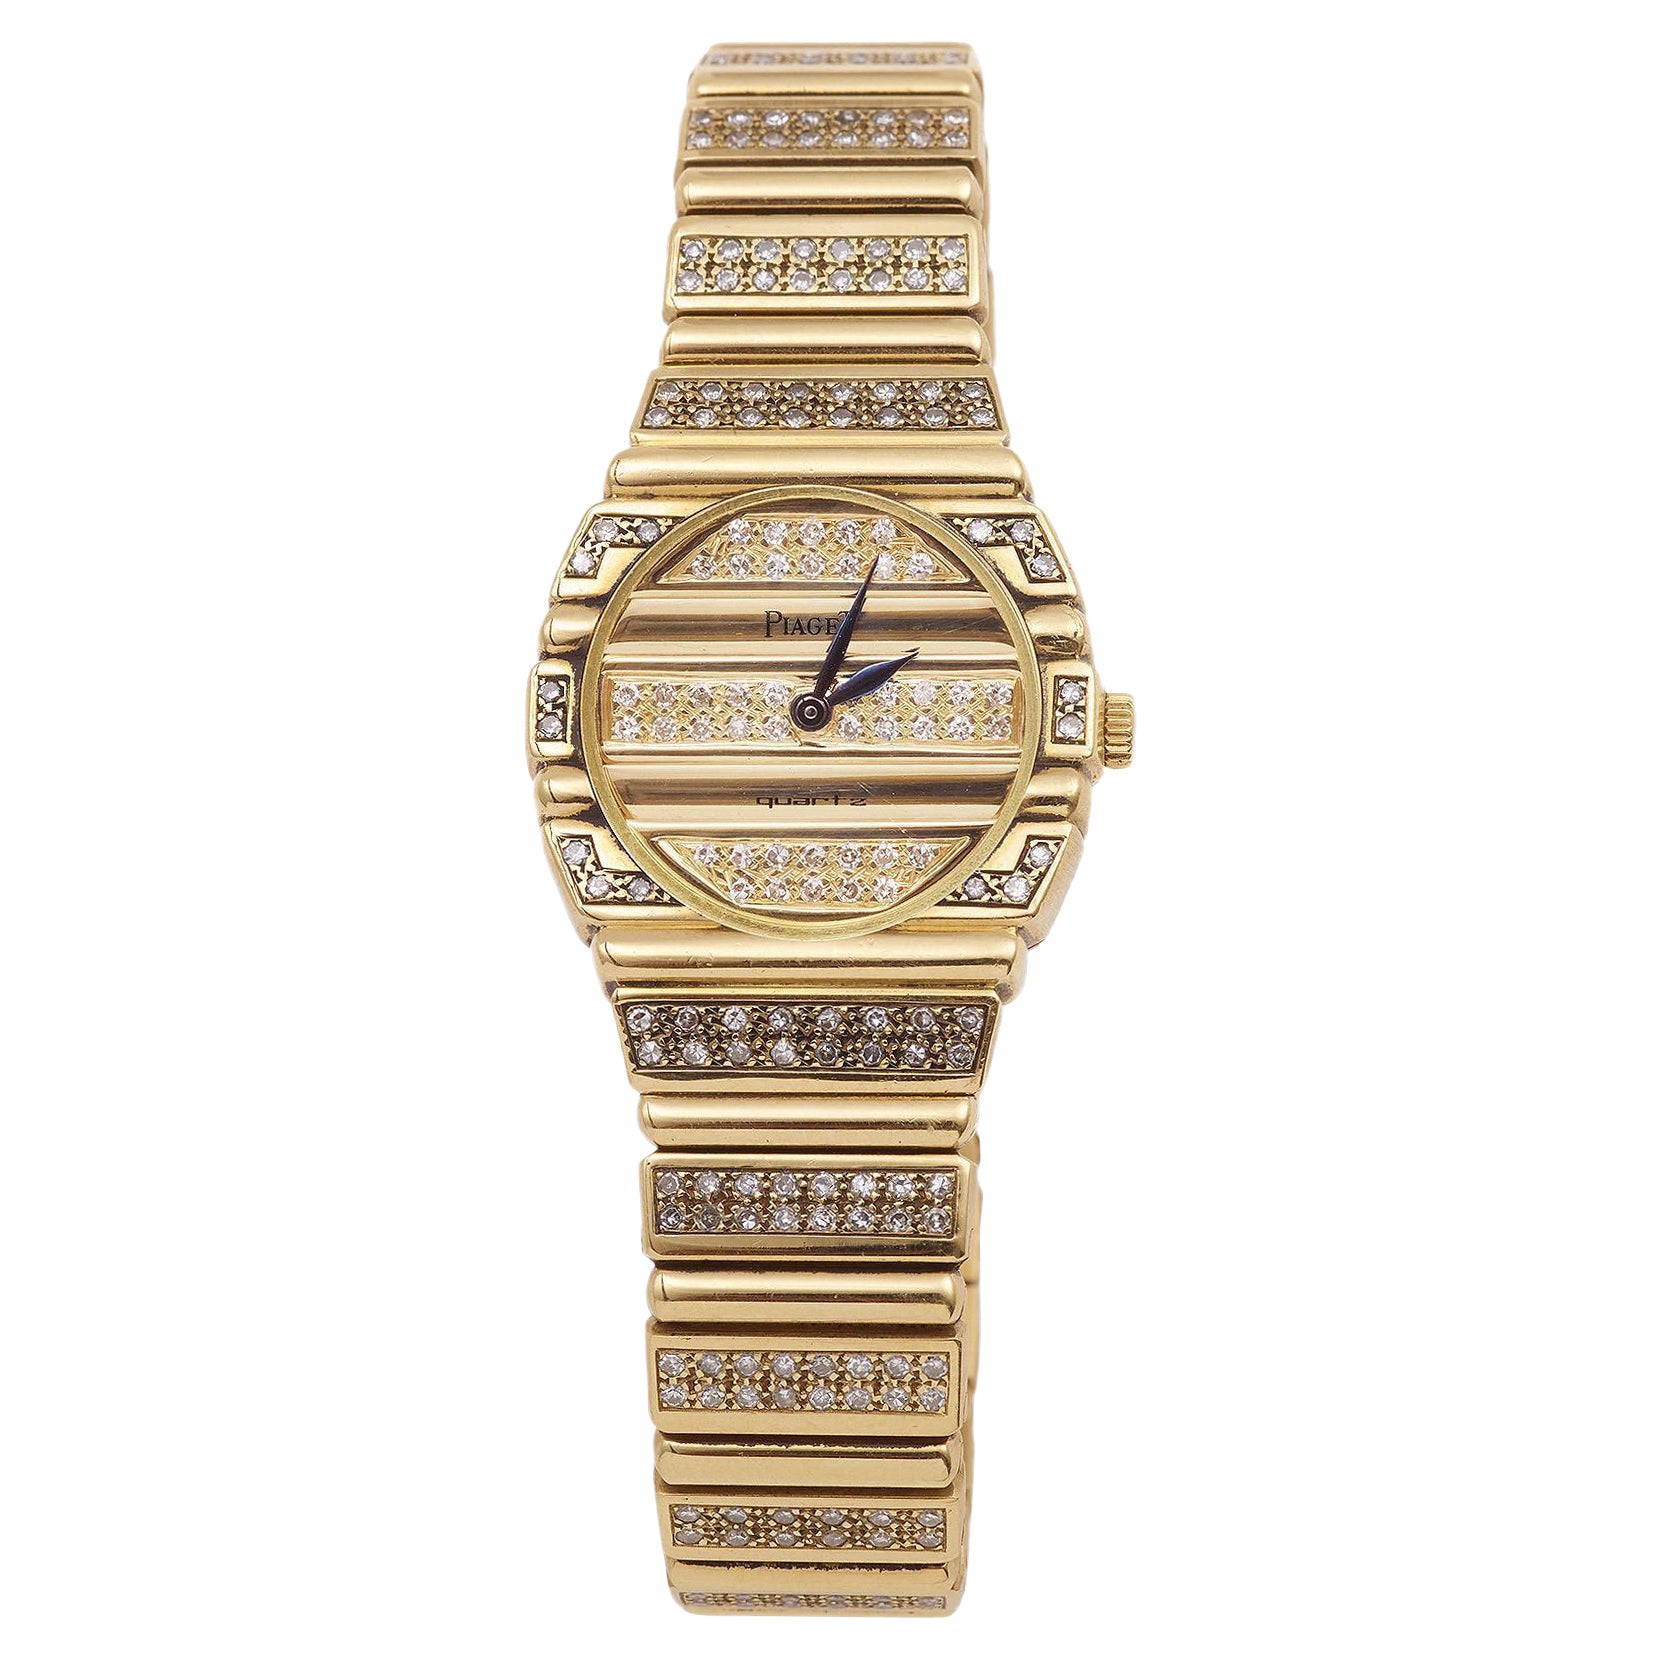 Lady Piaget "Polo" Full Diamonds 18 Carats Yellow Gold Watch